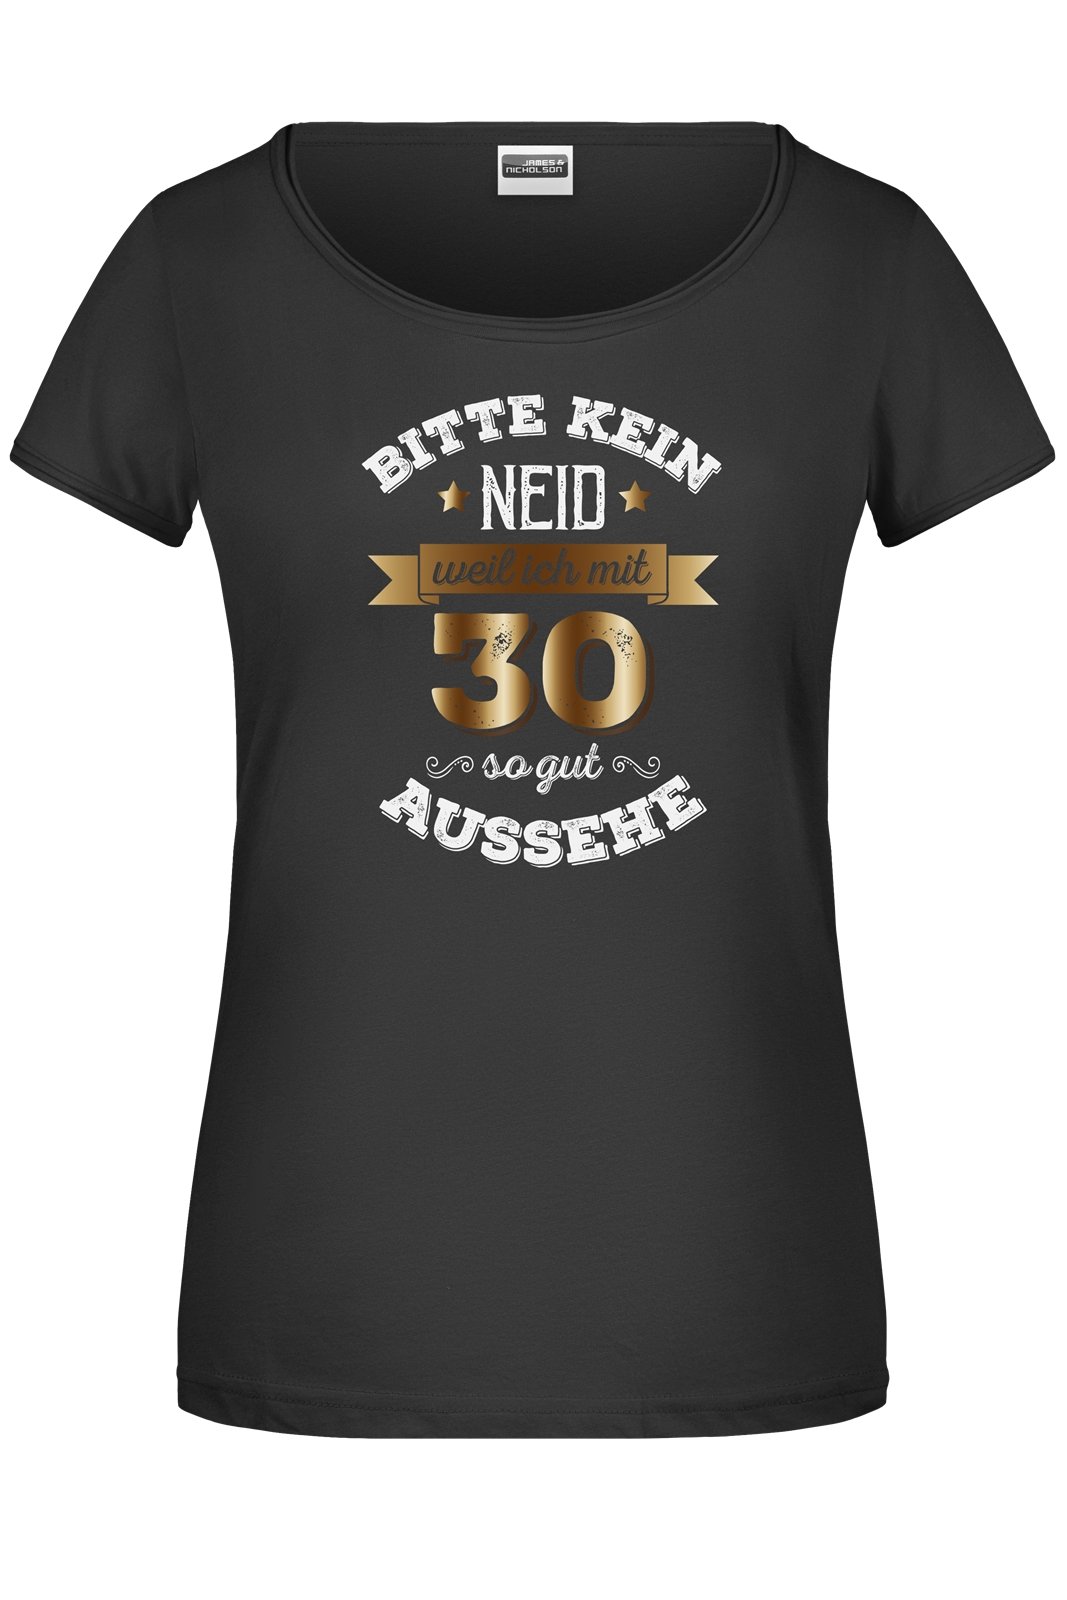 Bild: T-Shirt - Bitte kein Neid, weil ich mit 30 so gut aussehe. Geschenkidee